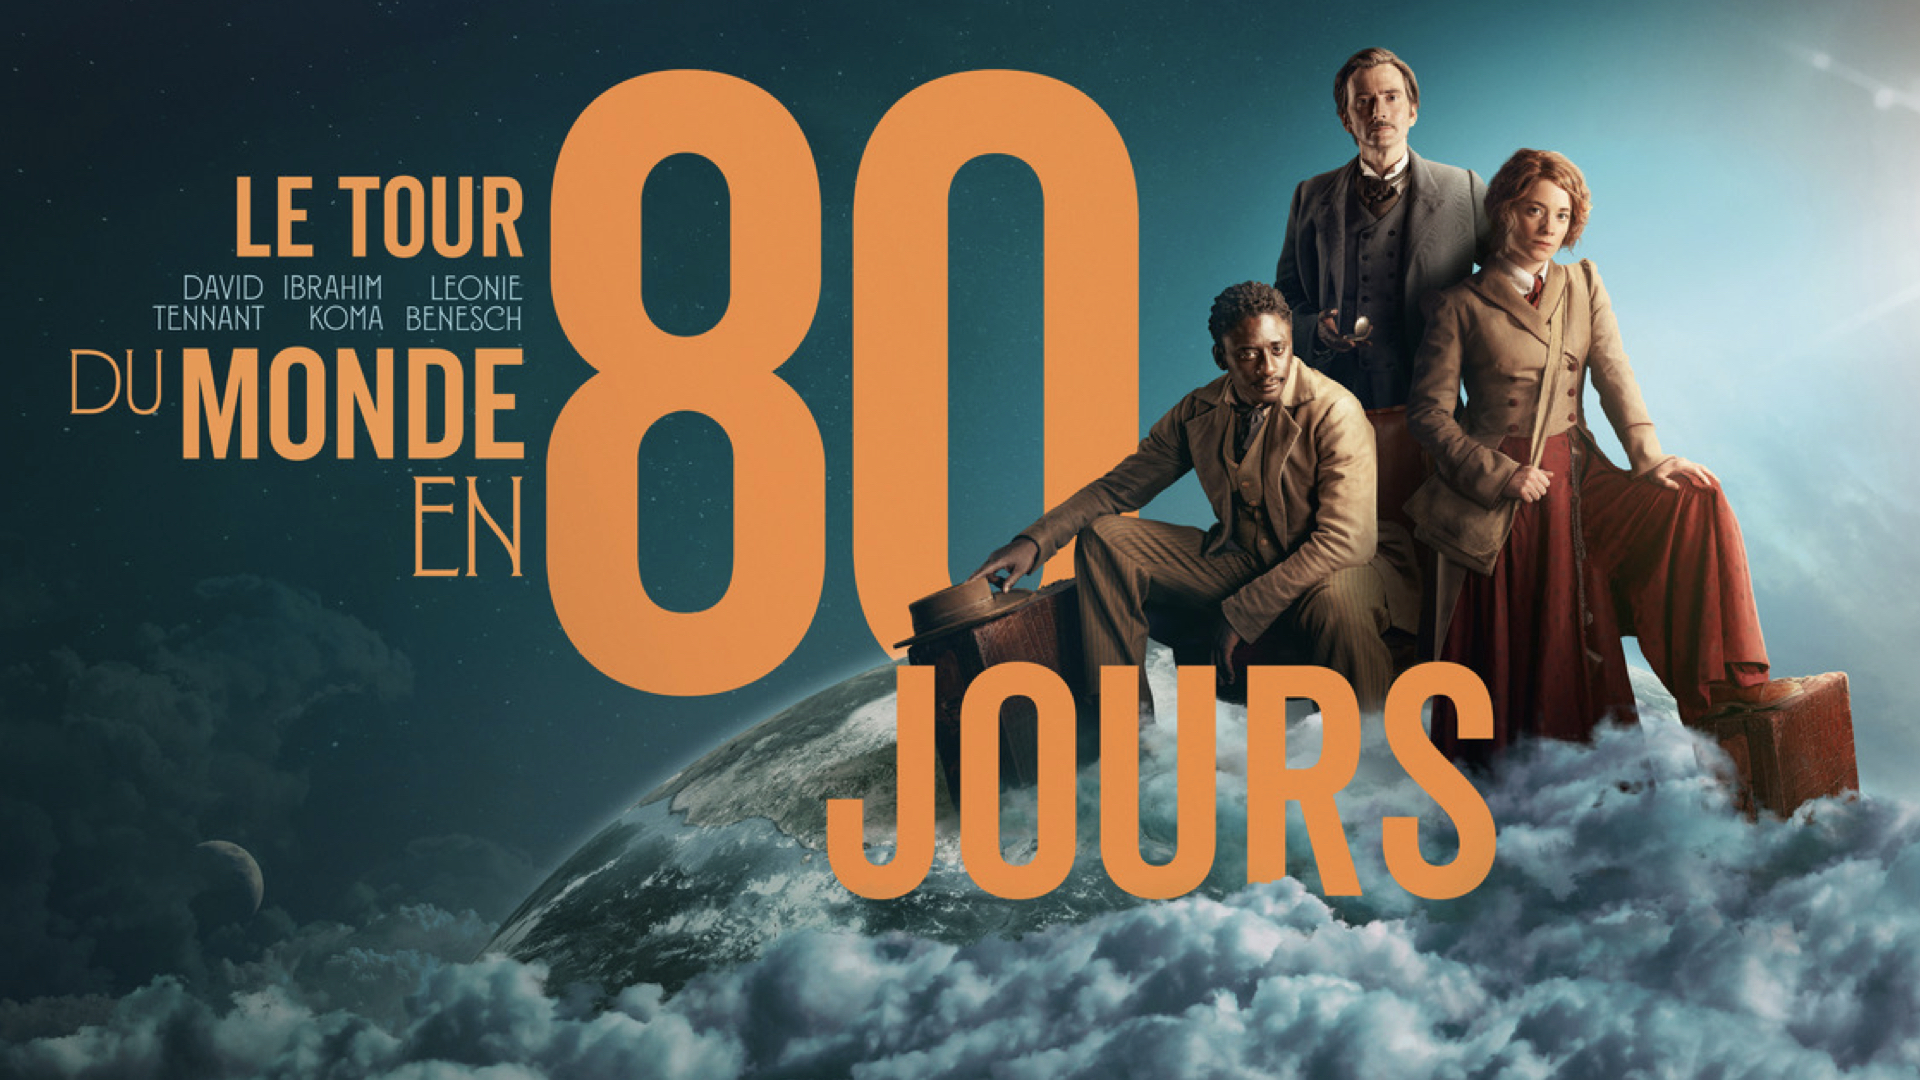 Le Tour du Monde en 80 jours série David Tennant Trailer France Télévisions Date de Sortie 2 janvier 2022 France 2